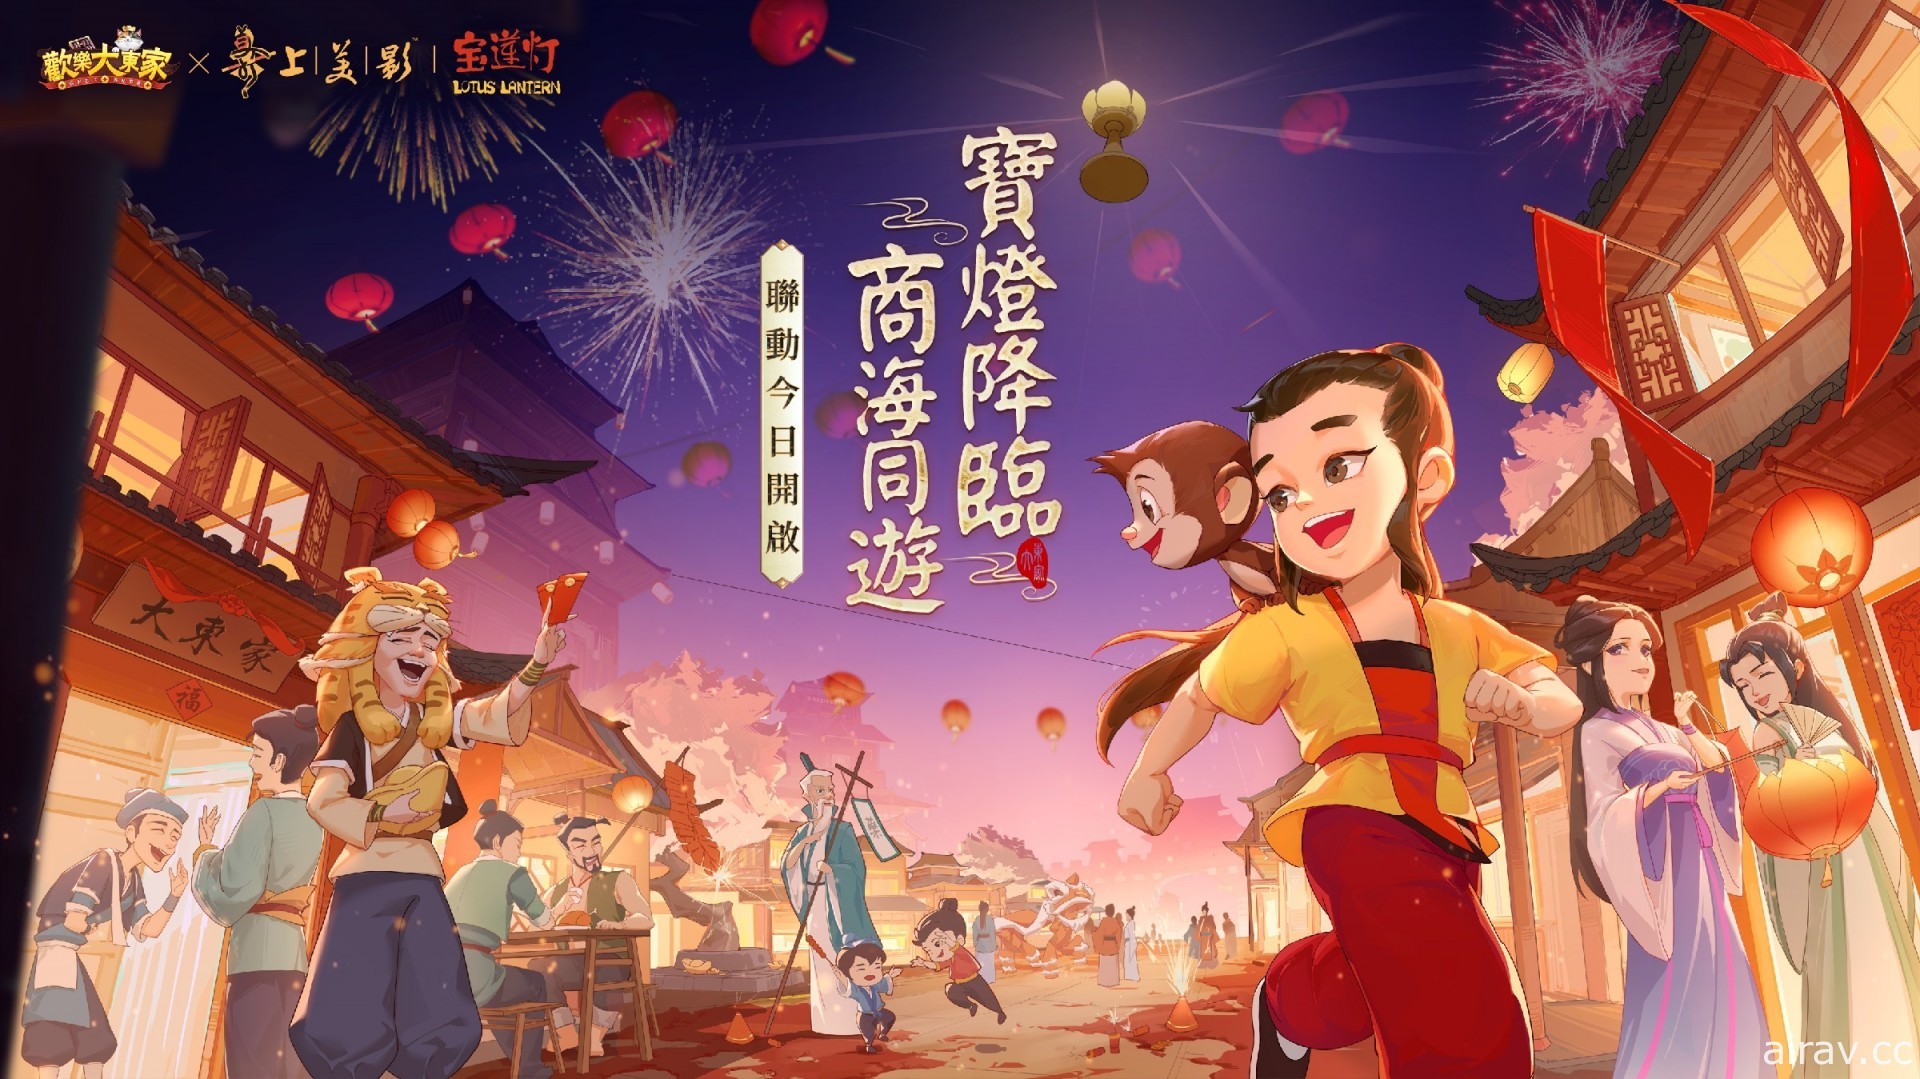 《欢乐大东家》x《宝莲灯》联动确定 新春版本 1 月 22 日正式开放